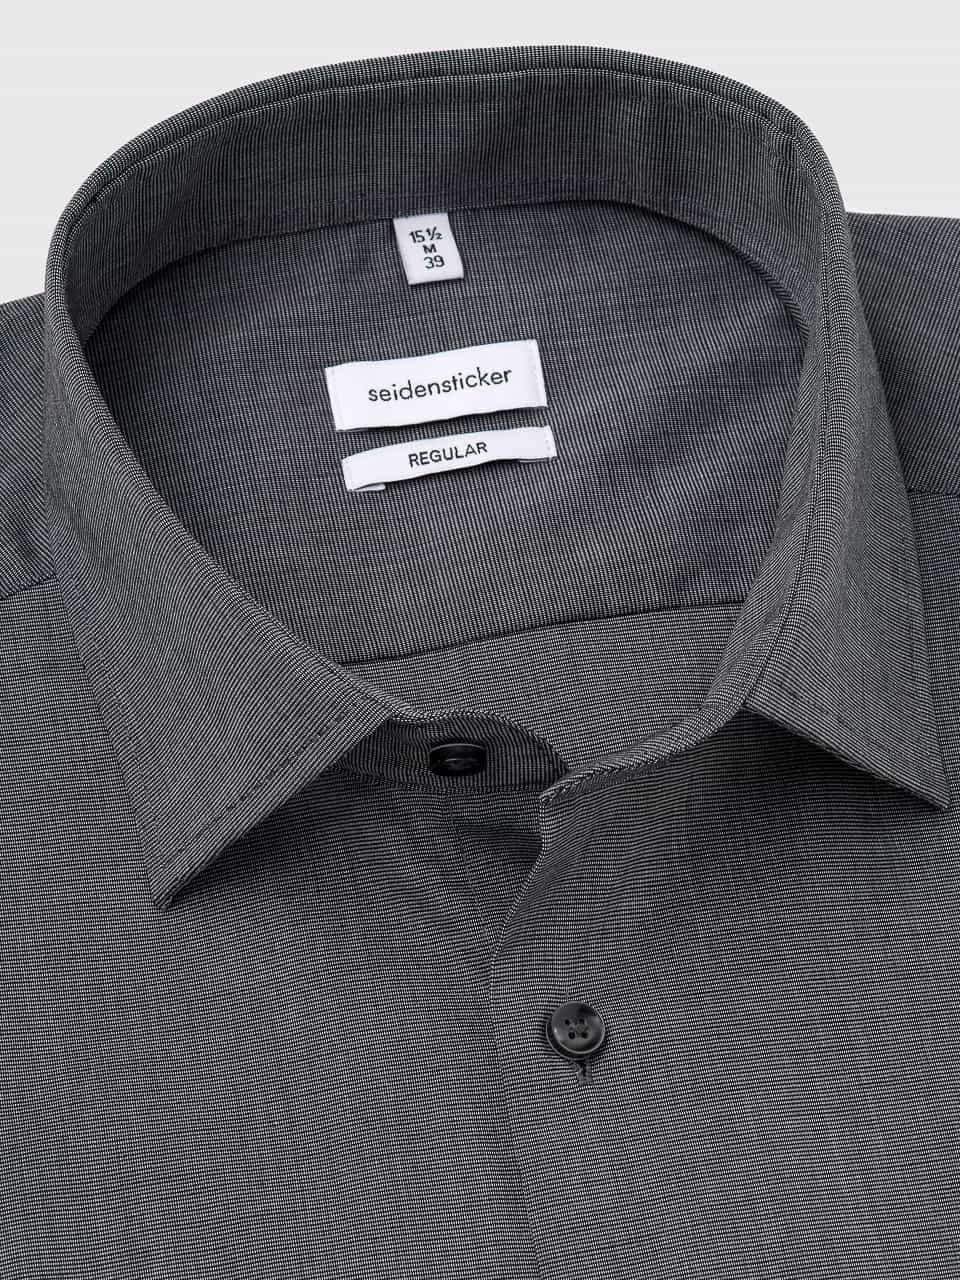 Seidensticker Gray Long Sleeve Non-Iron Cotton Shirt | Peter Christian